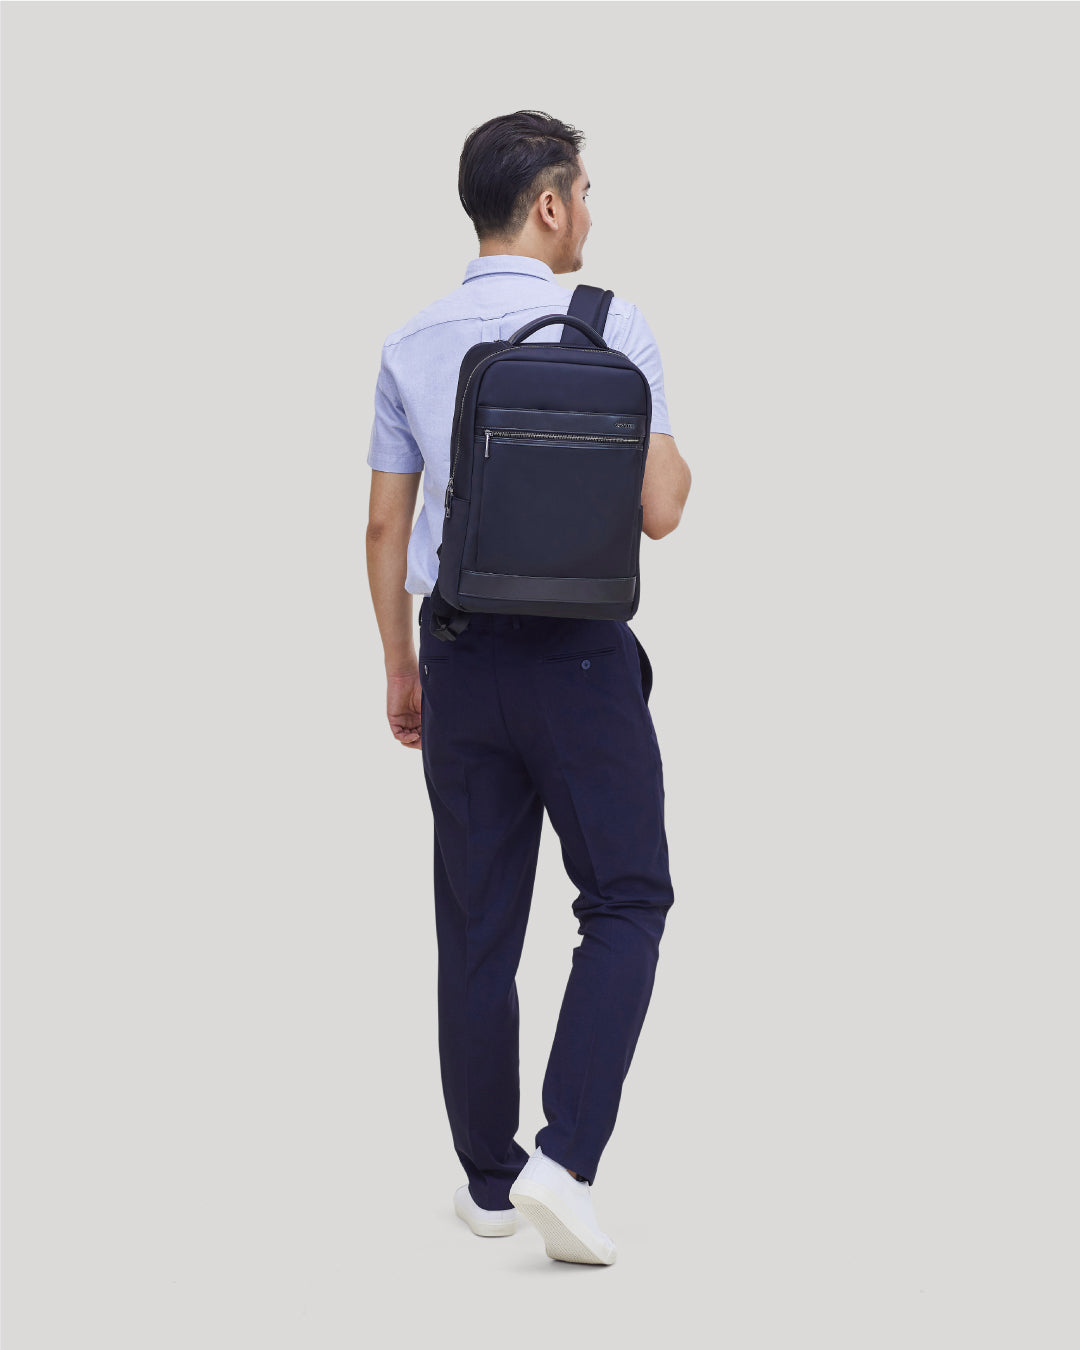 Ultralight Slim Laptop Backpack